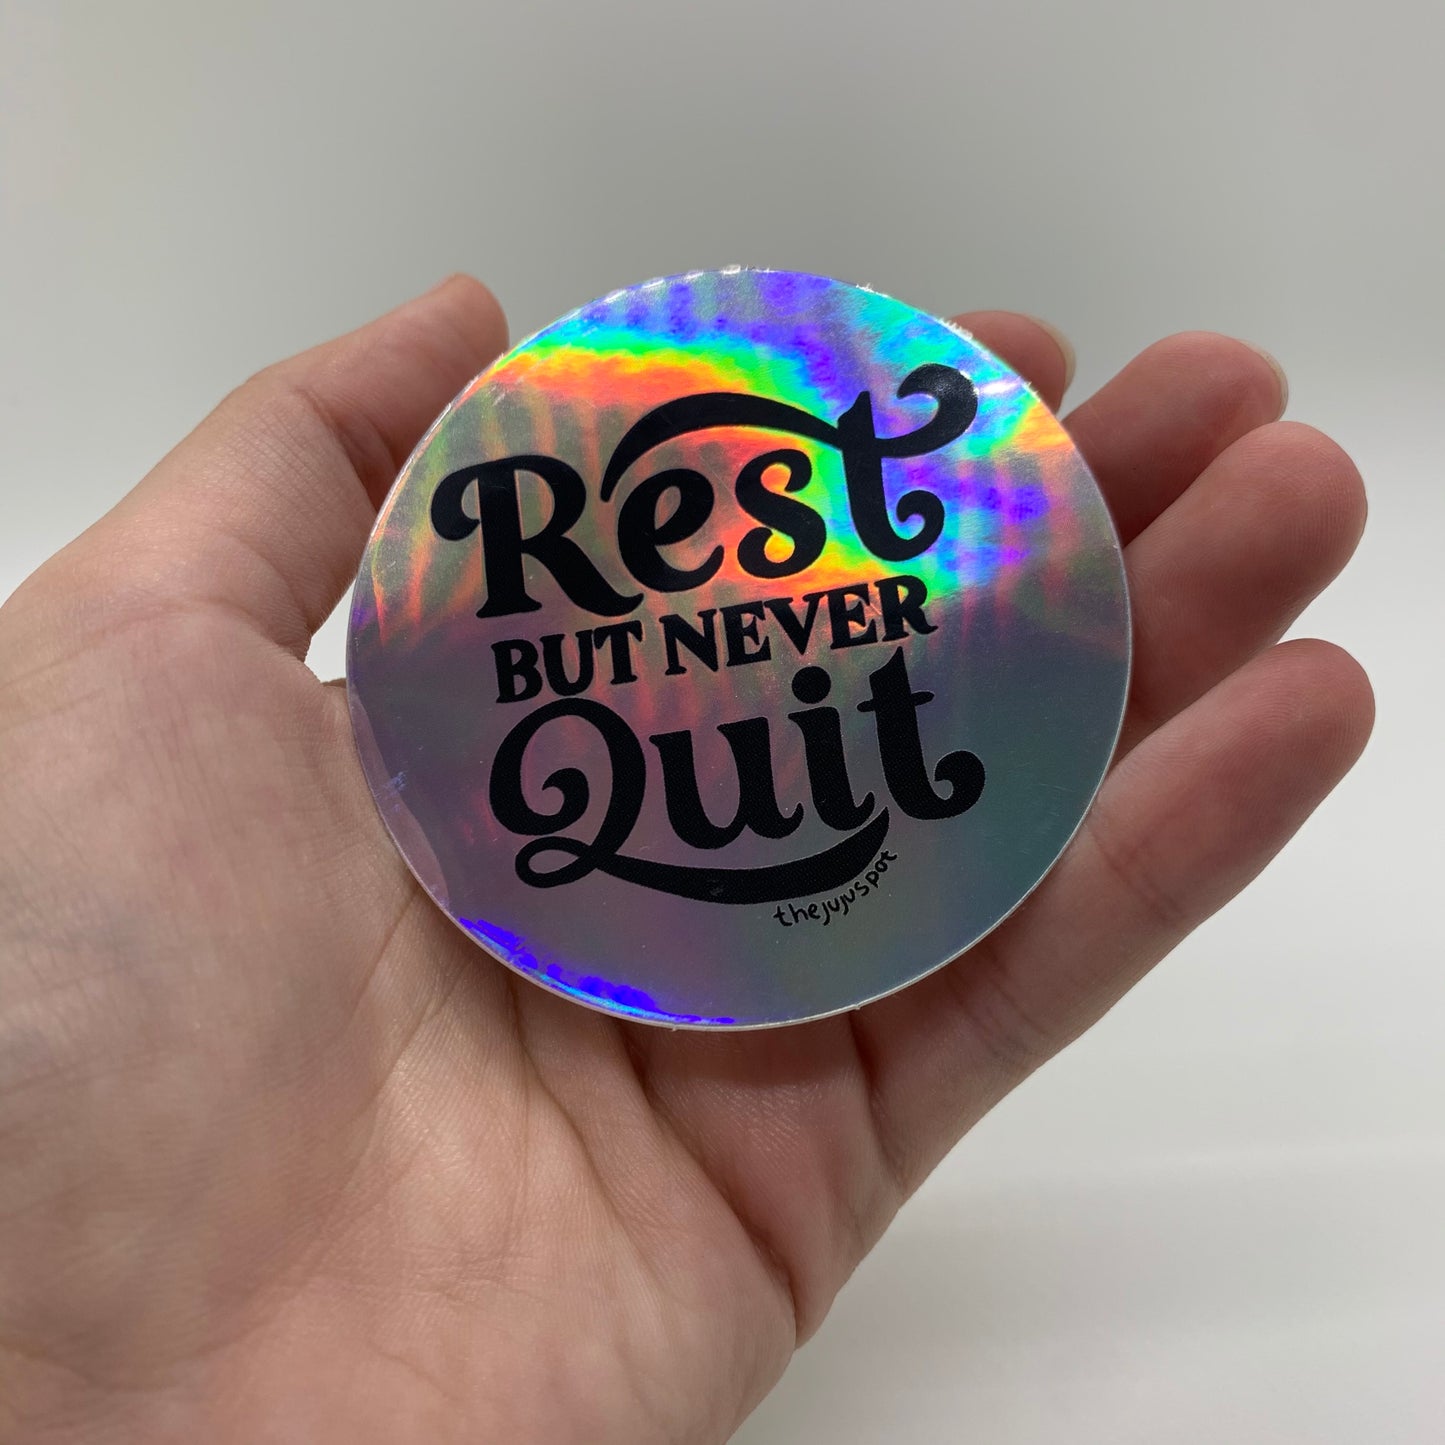 Rest but don’t quit